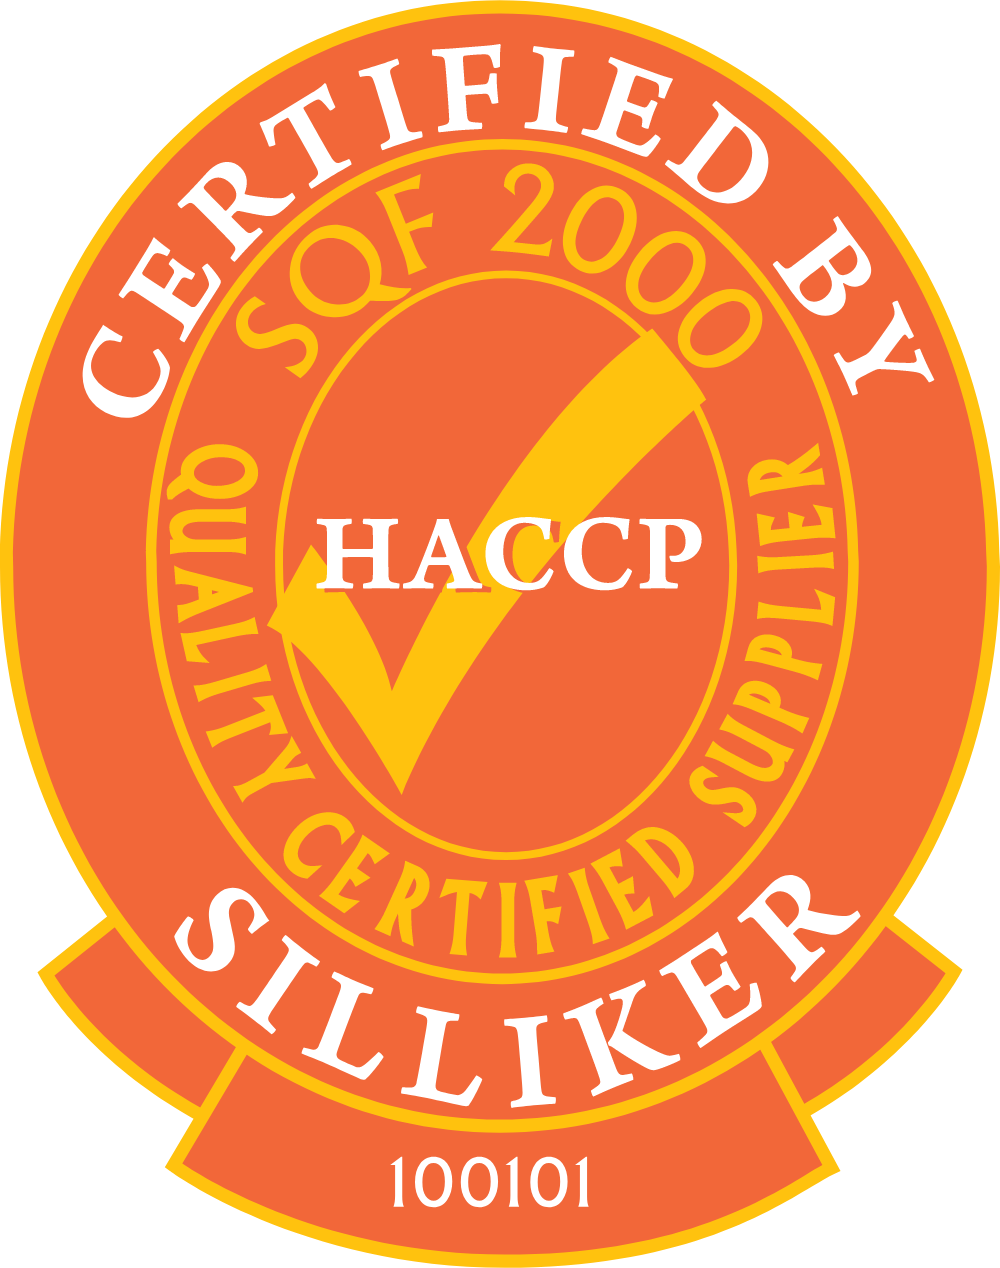 Certificate by Silliker Logo Logos